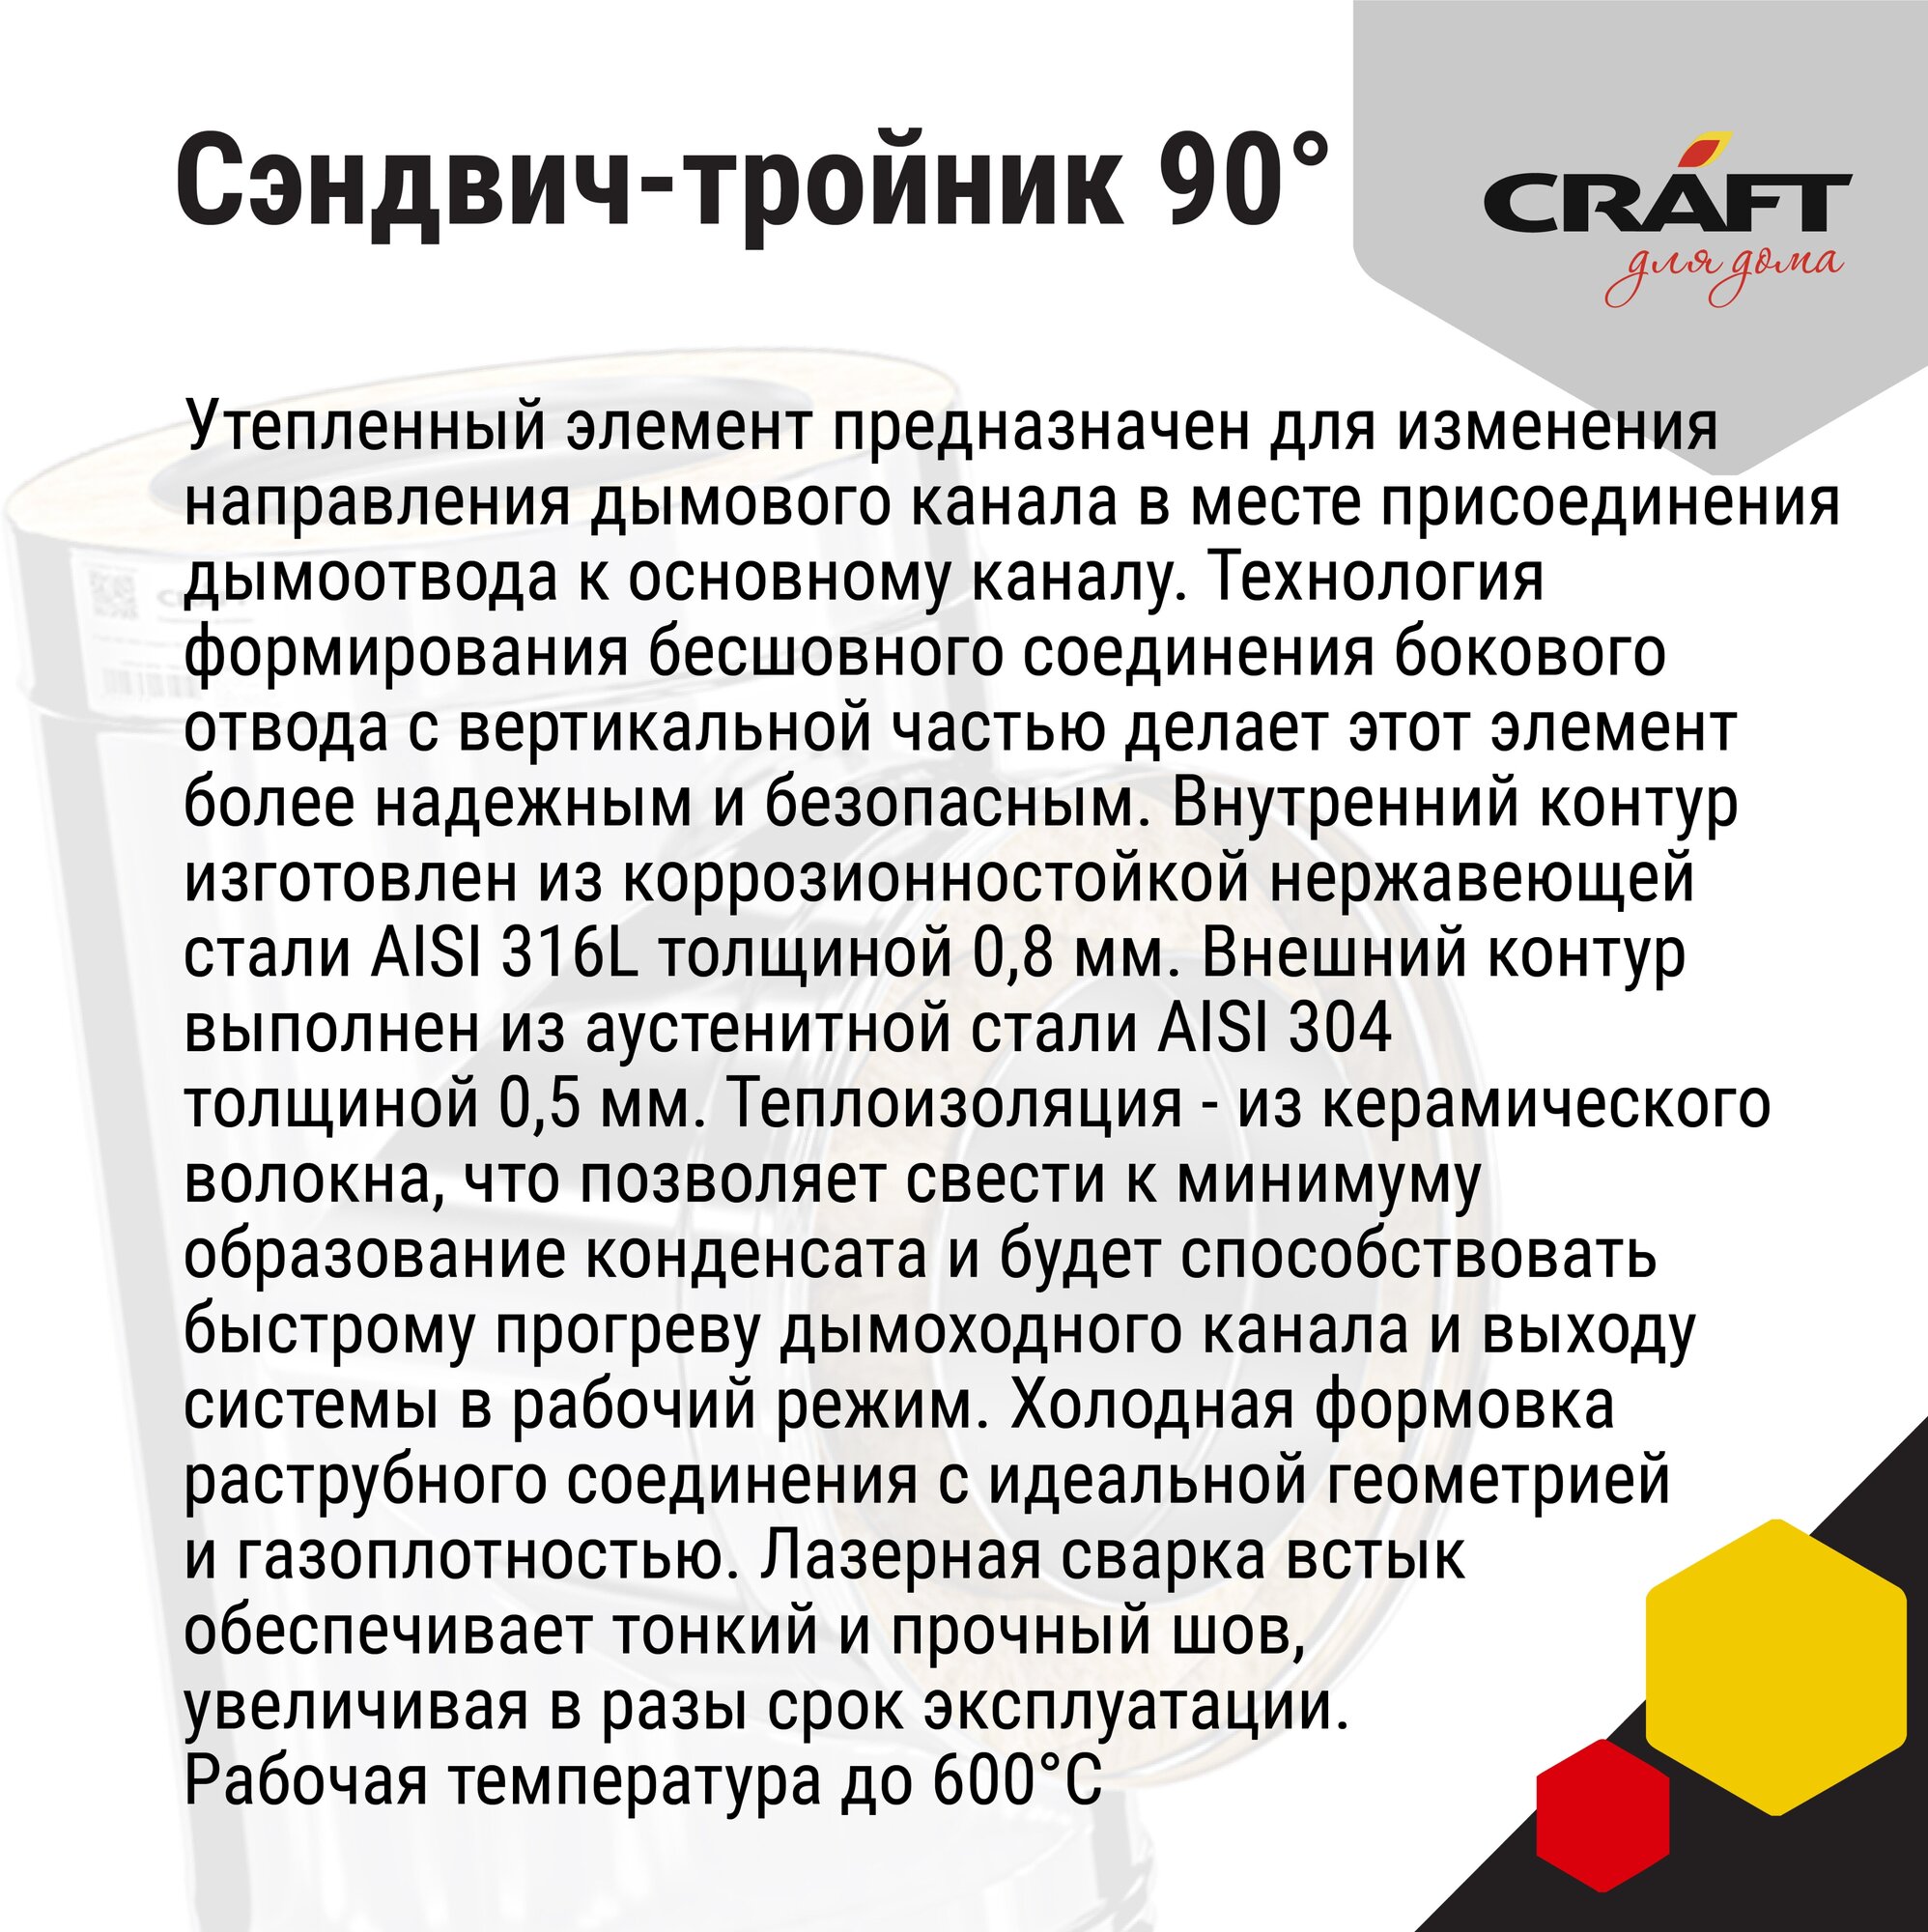 Craft HF-50B сэндвич-тройник 90° (316/0,8/304/0,5) Ф150х250 - фотография № 2